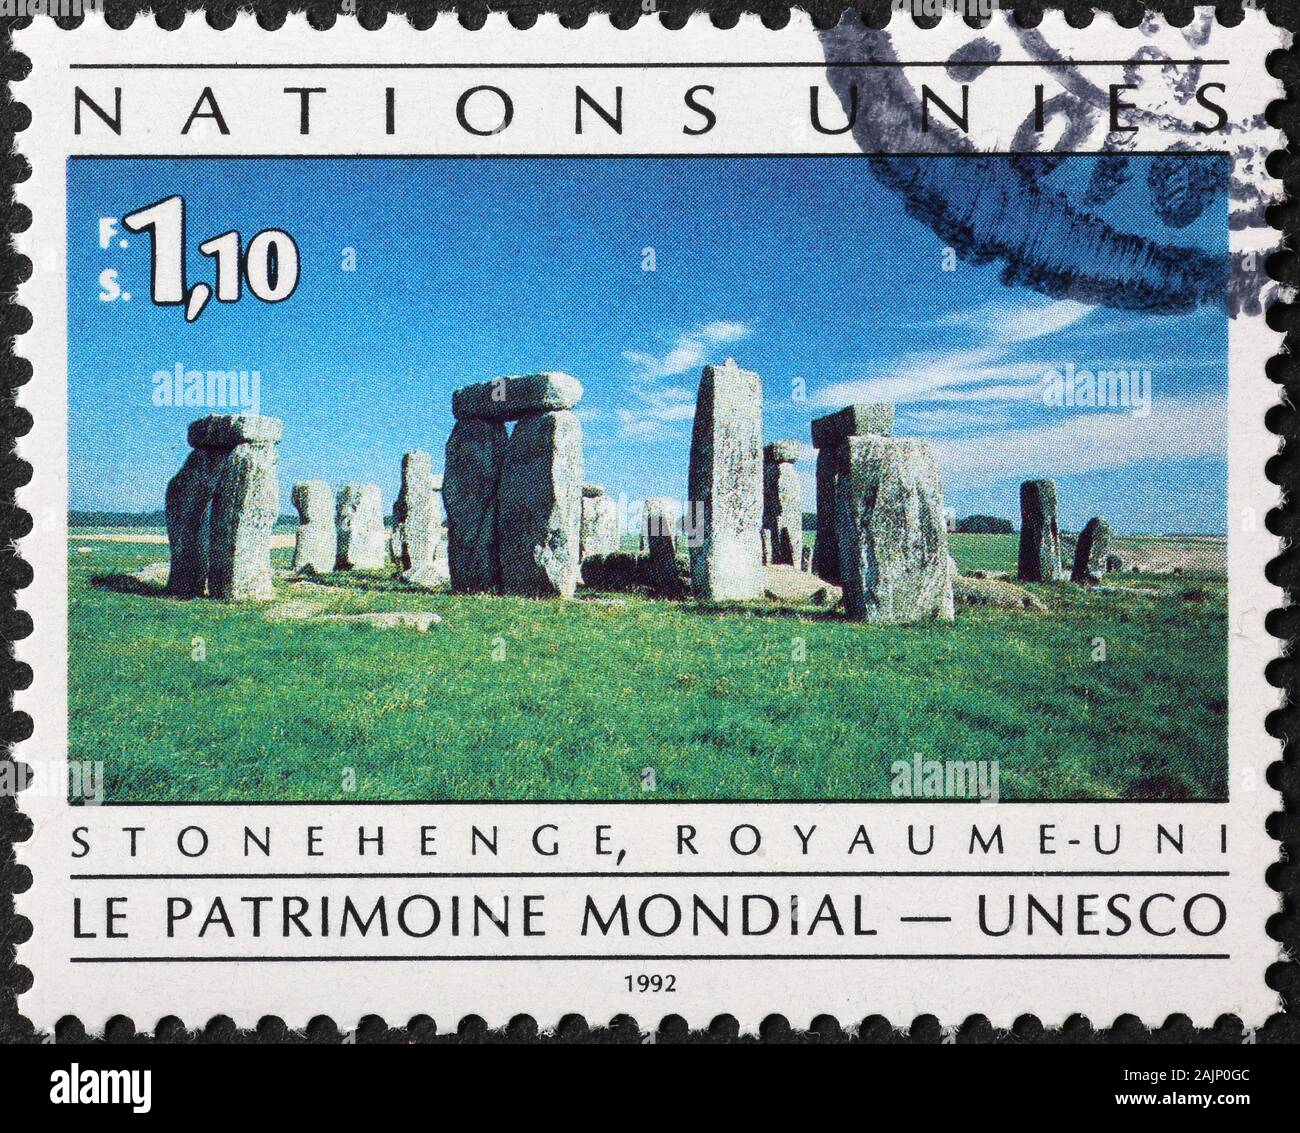 Prähistorische Monument von Stonehenge auf Briefmarke Stockfoto